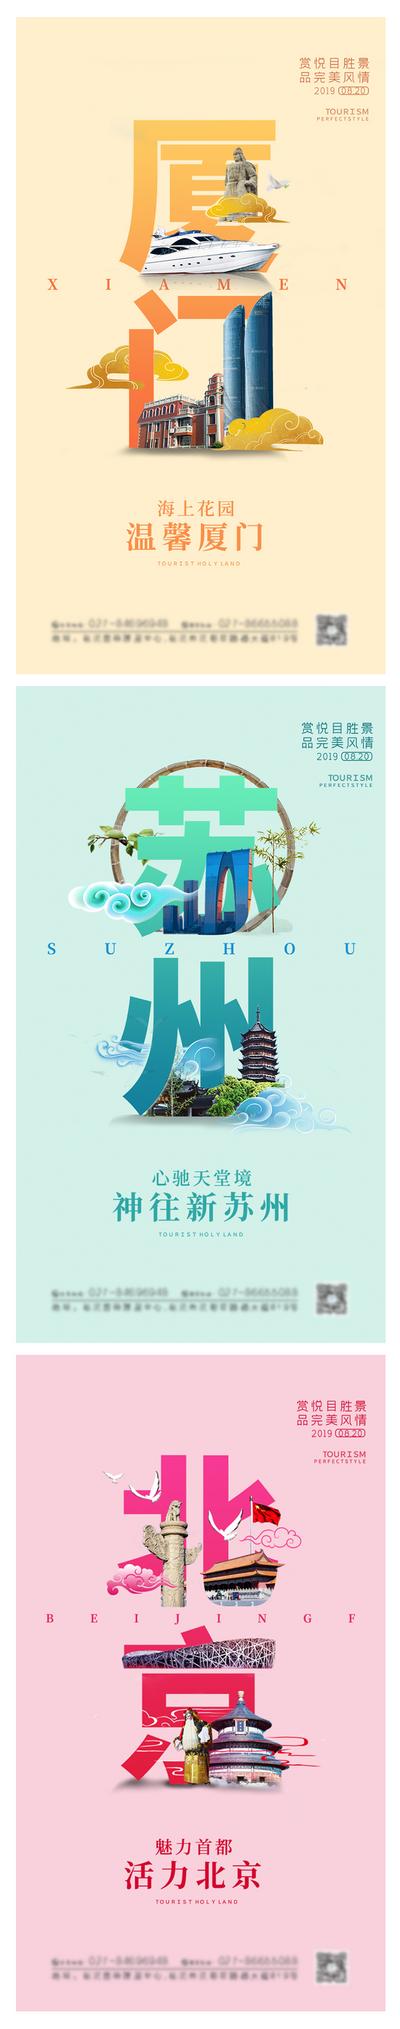 【南门网】海报 旅游 景点 厦门 苏州 北京 地标 旅行社 出游 出行